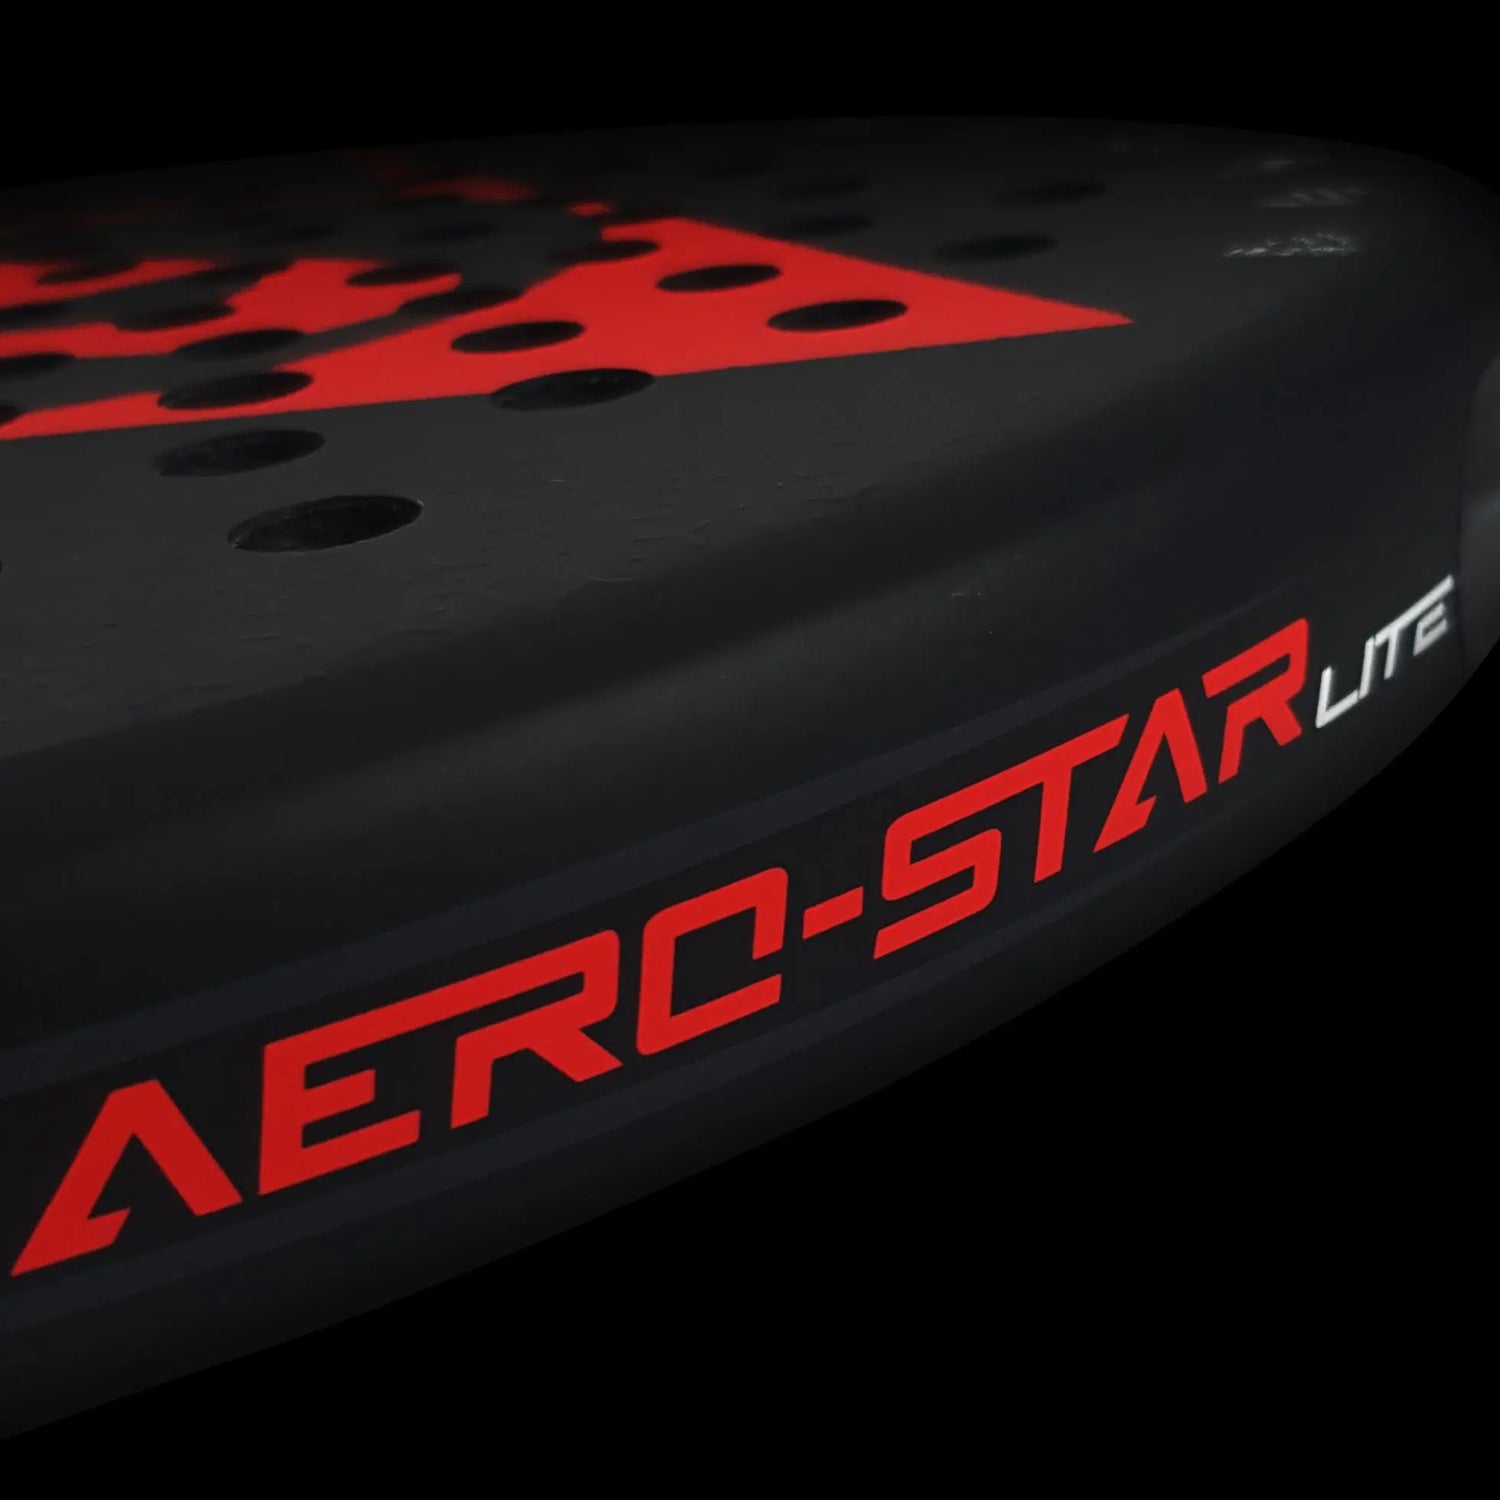 Dunlop Aero-Star Lite Padel Racket Racquet Point